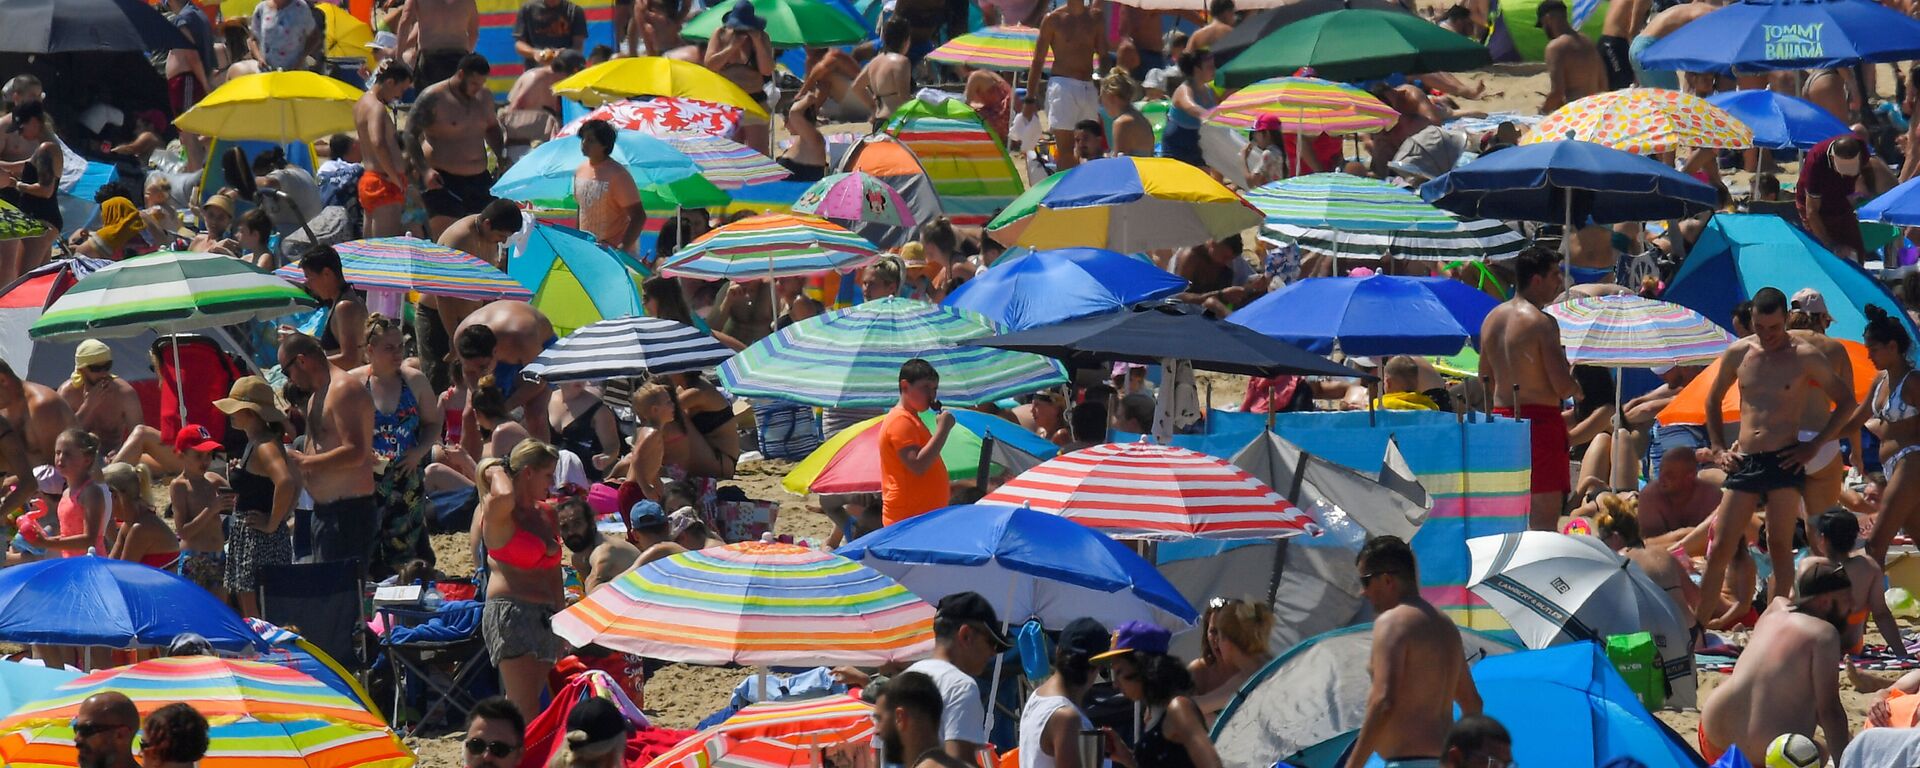 Люди наслаждаются жаркой погодой на пляже в Борнмуте, Великобритания - Sputnik Ўзбекистон, 1920, 09.07.2020